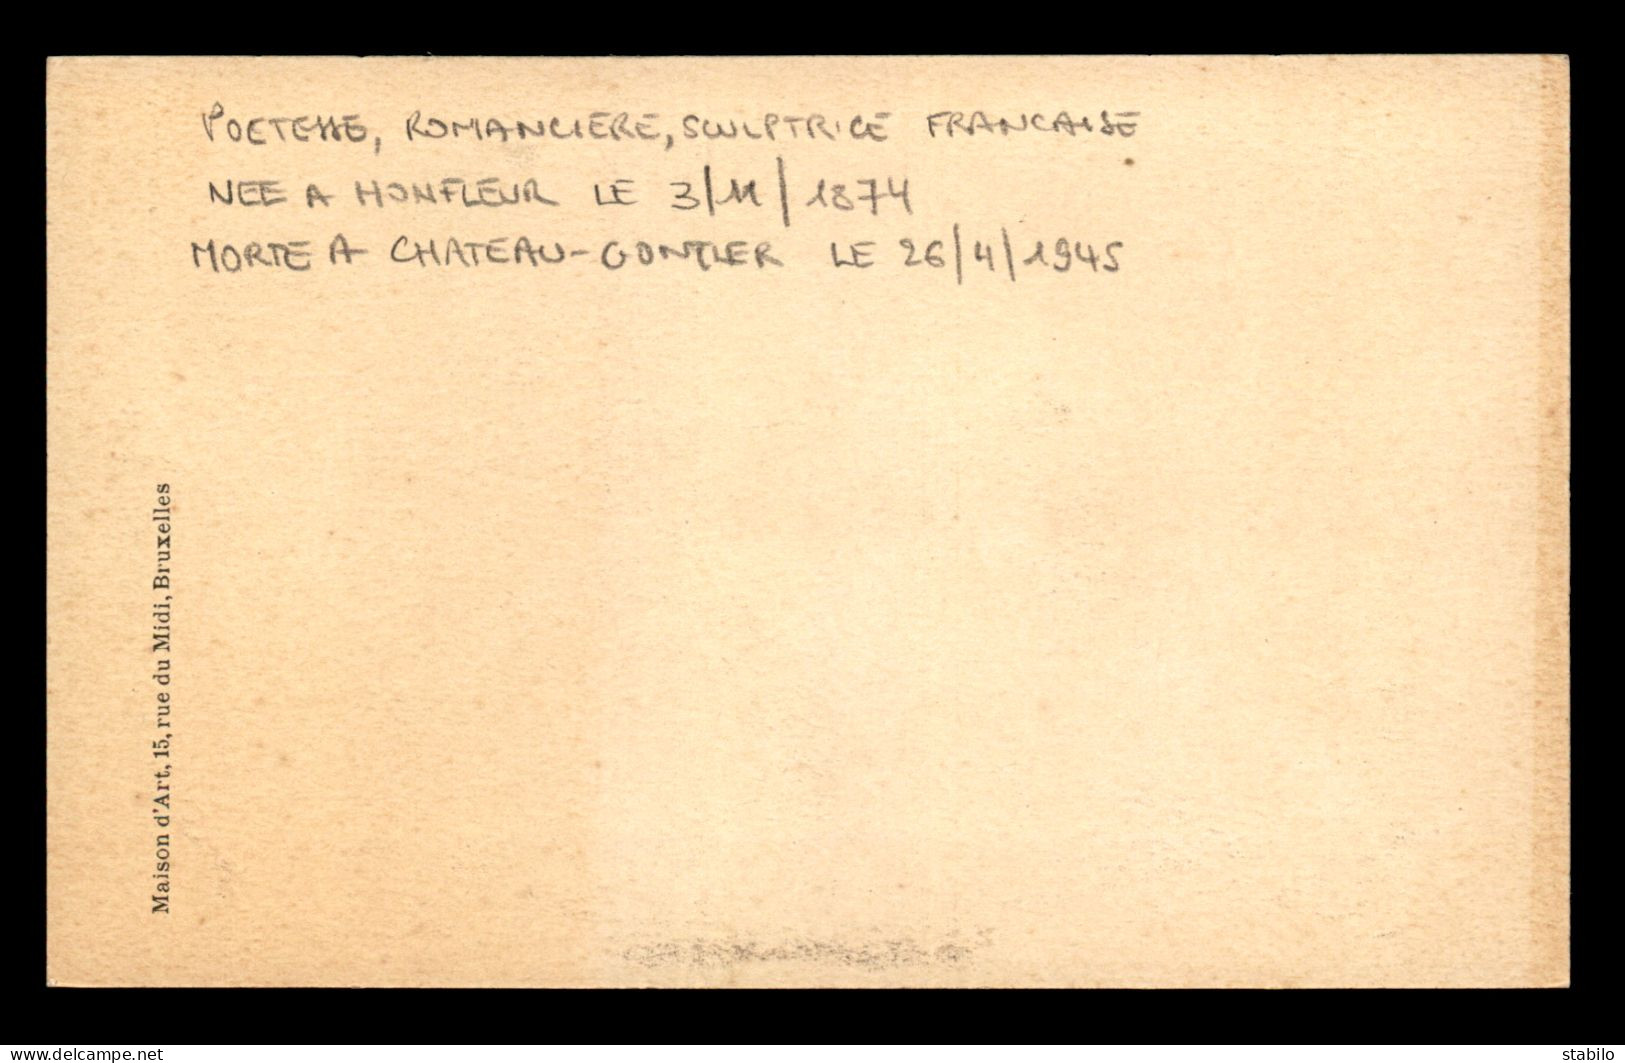 ECRIVAINS - LUCIE DELARNE MARDRUS (1874-1945) POETE,  ROMANCIERE ET SCULPTRICE FRANCAISE - Ecrivains